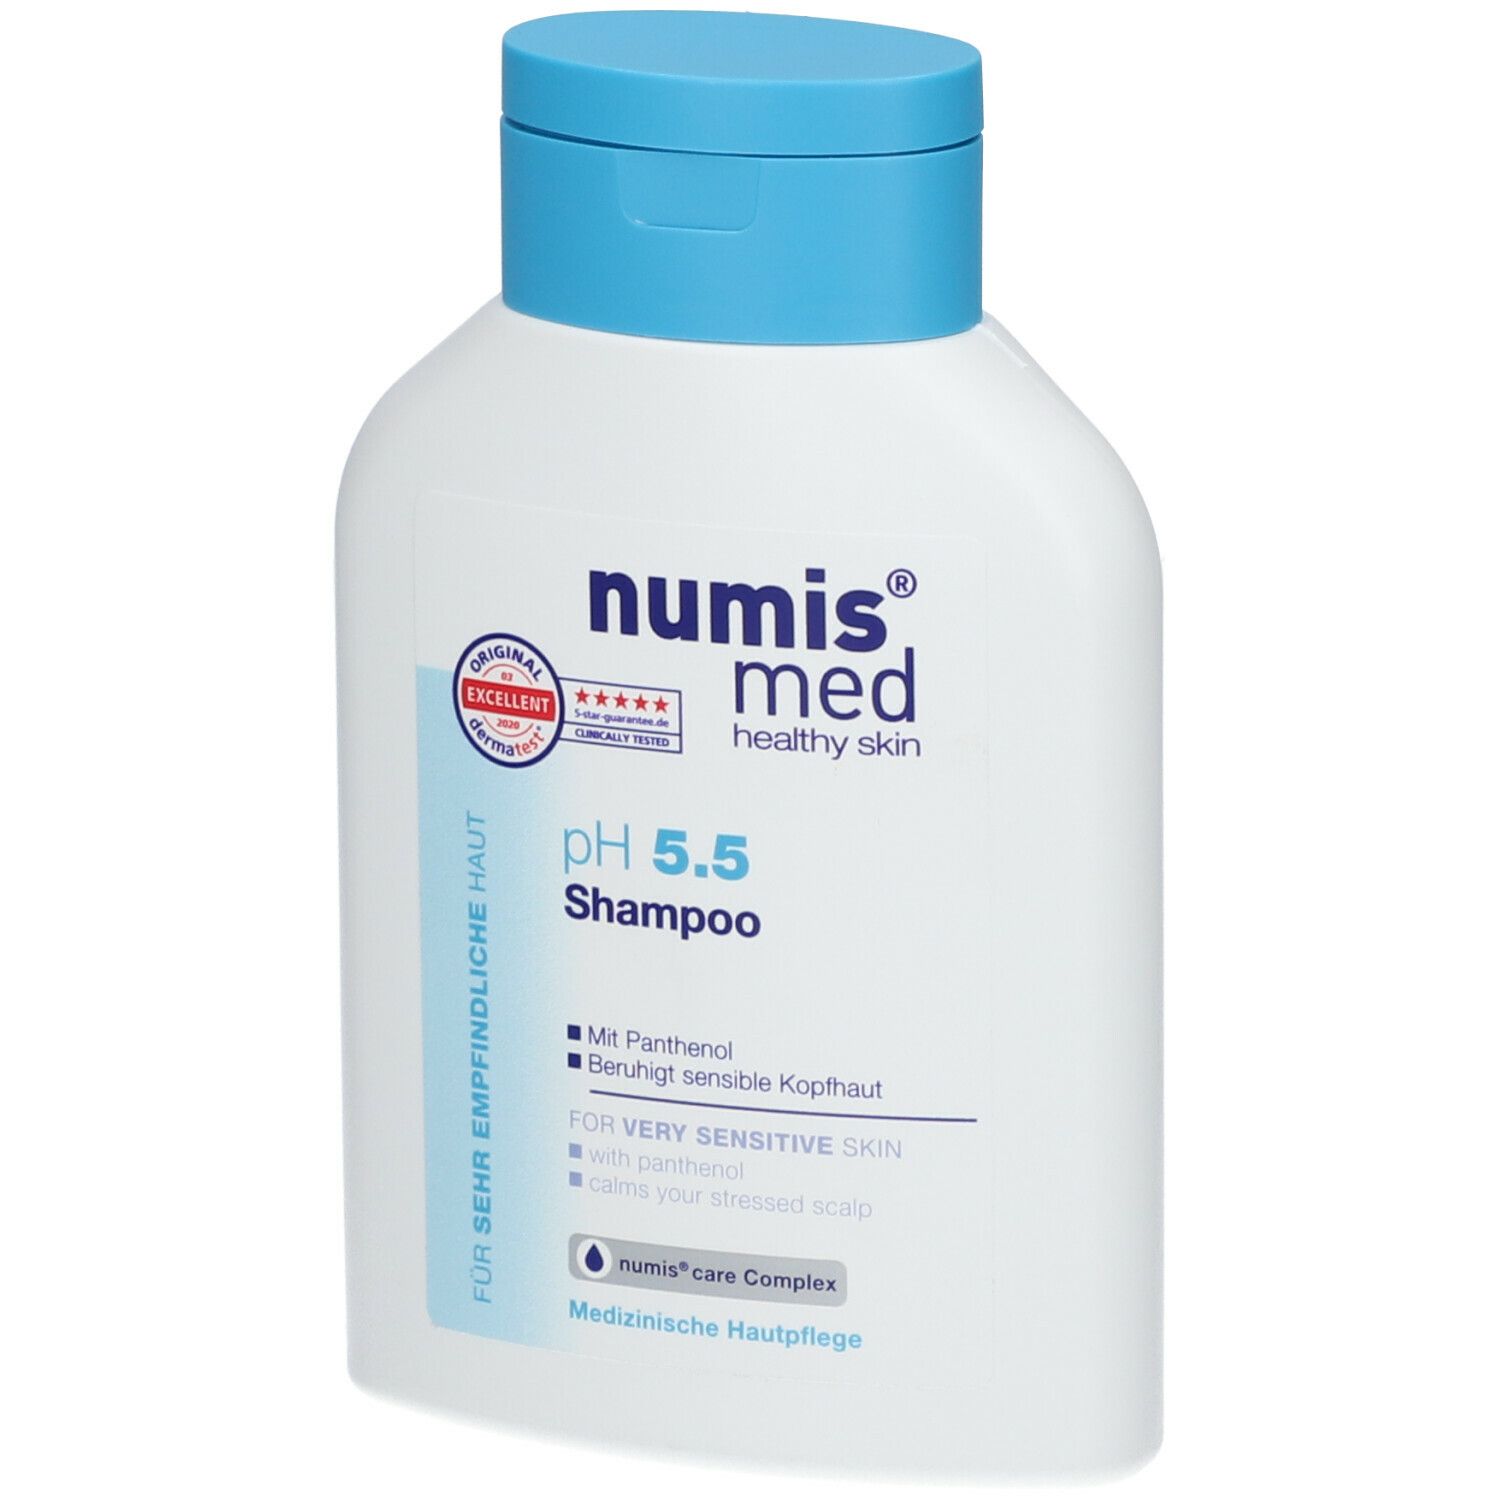 numis® med pH 5.5 Shampoo